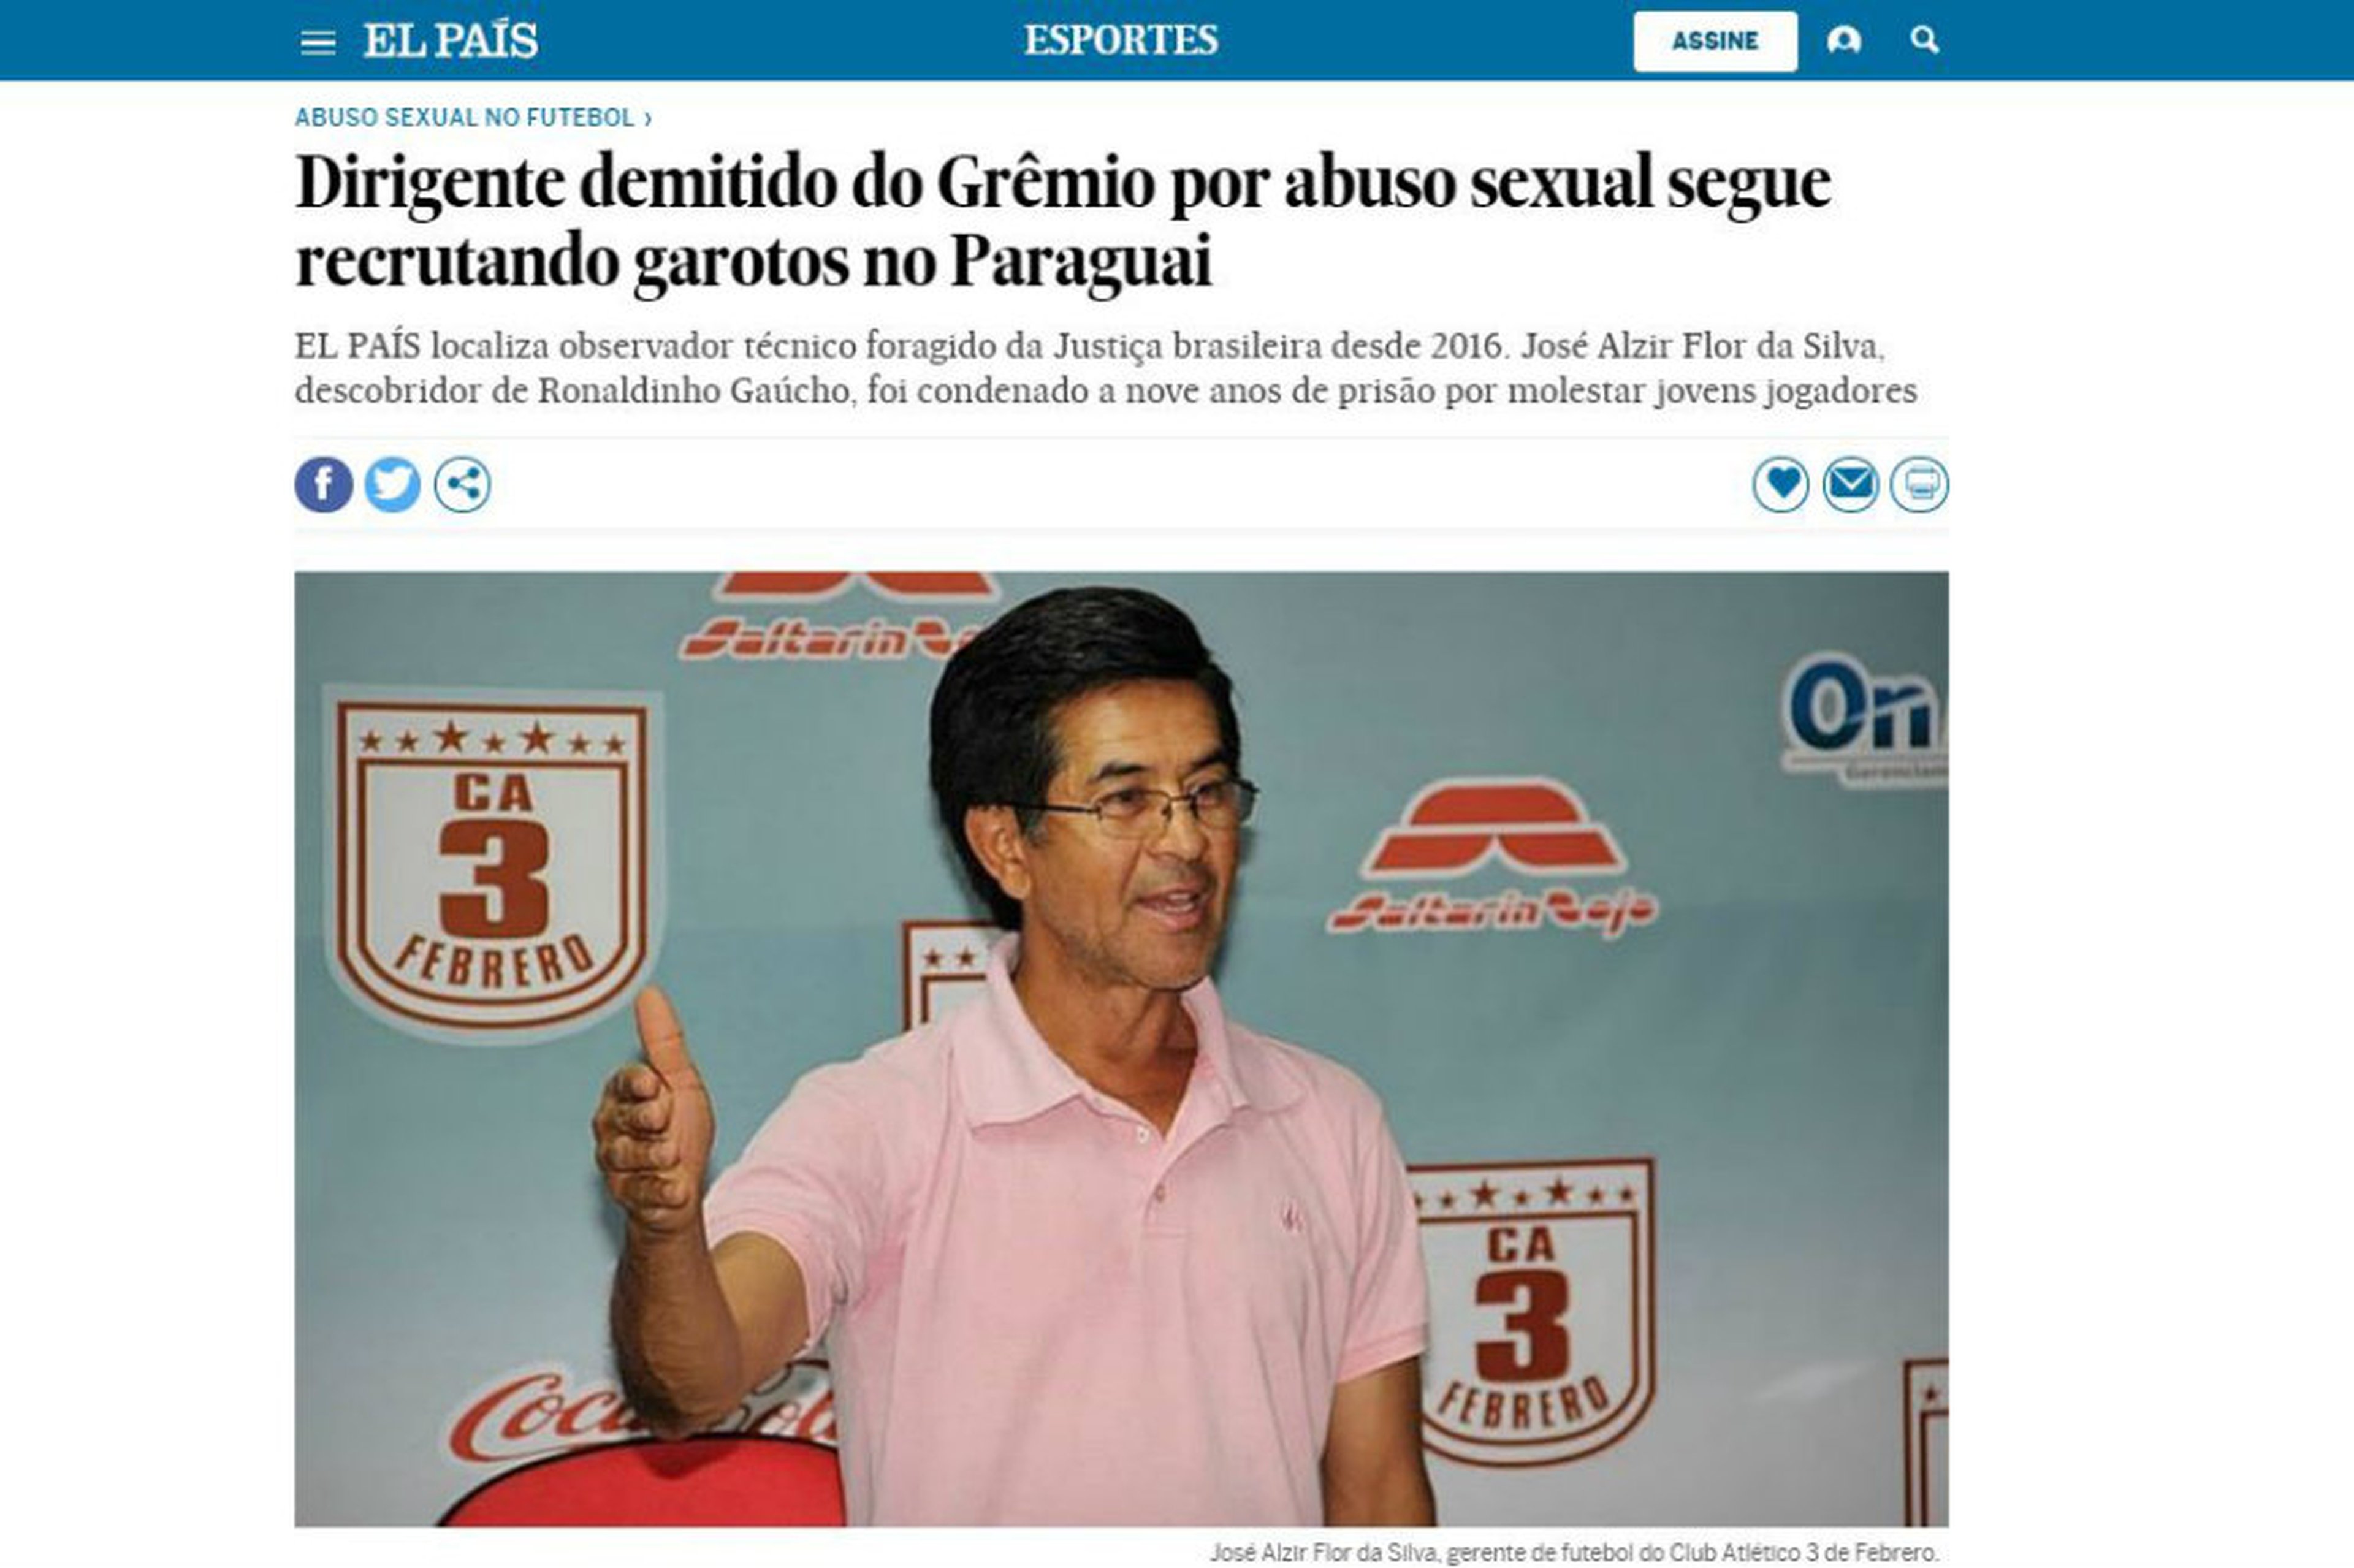 Reprodução/El País